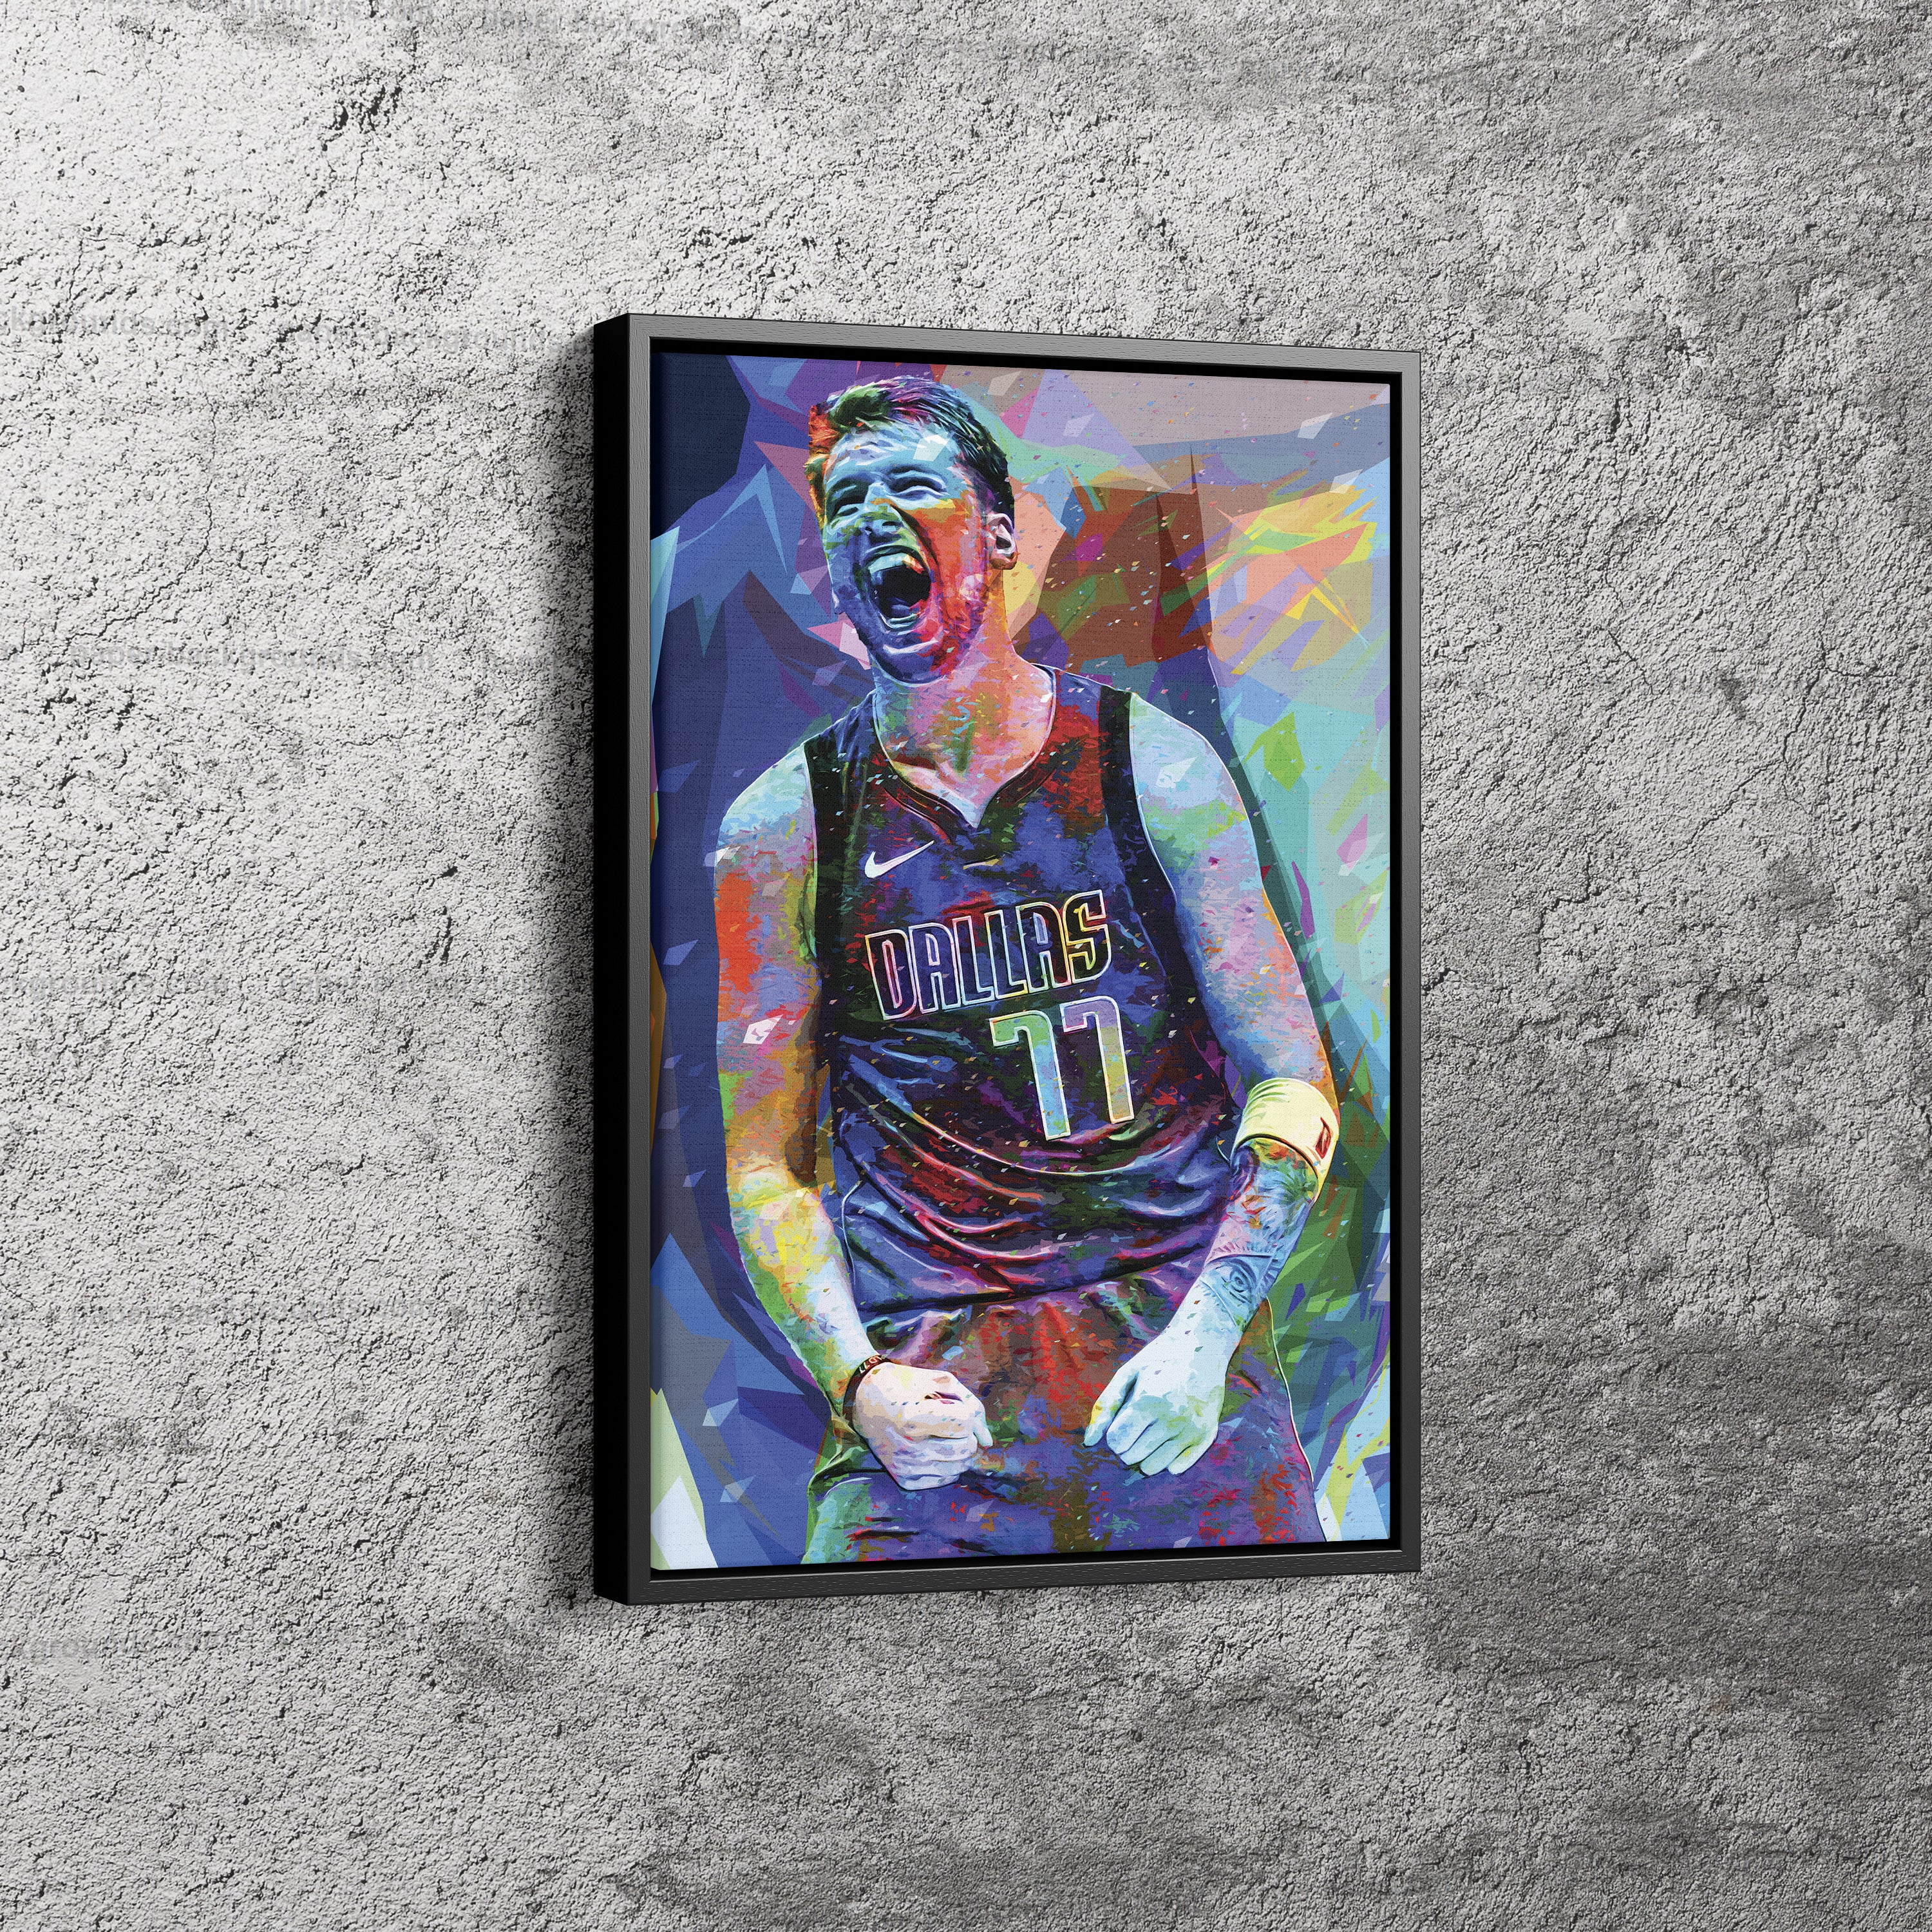 Luka Doncic Mavericks Custom Framed Jersey Display